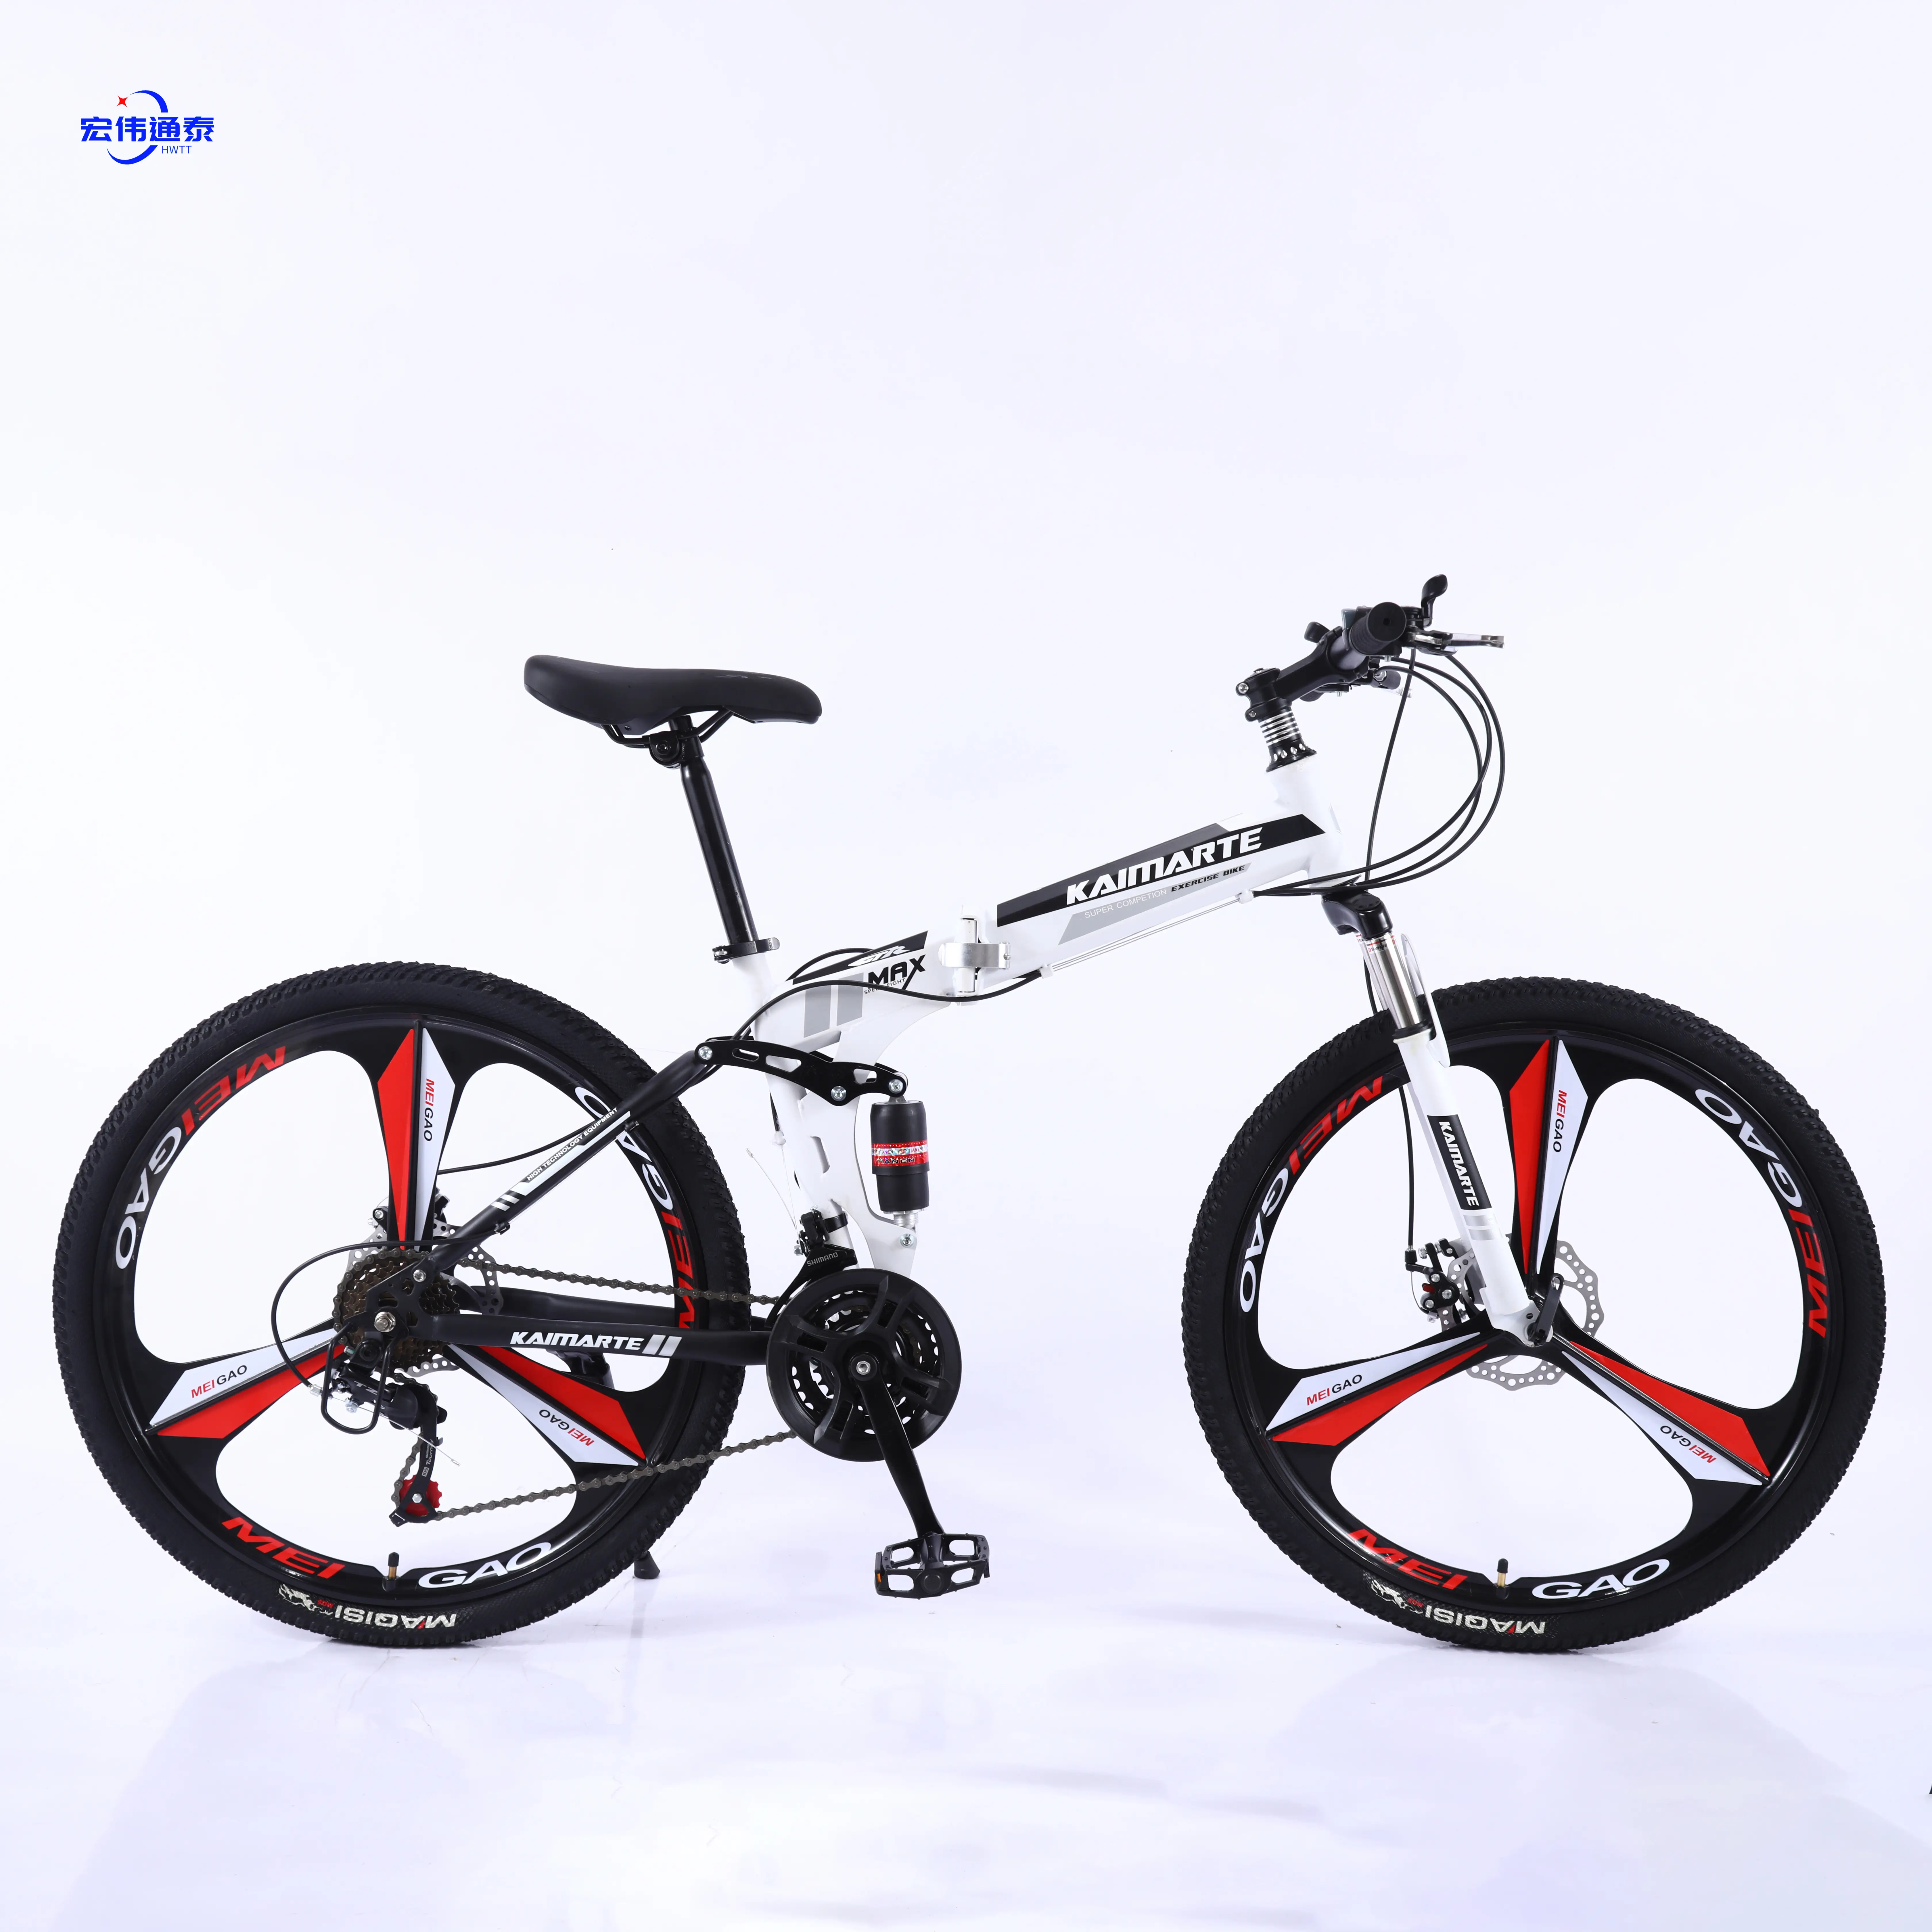 24 26 27.5 29 인치 레이서 자전거 도로 자전거/저렴한 접이식 산악 자전거 좋은 품질 쉬운 배/쉬운 운반 합금